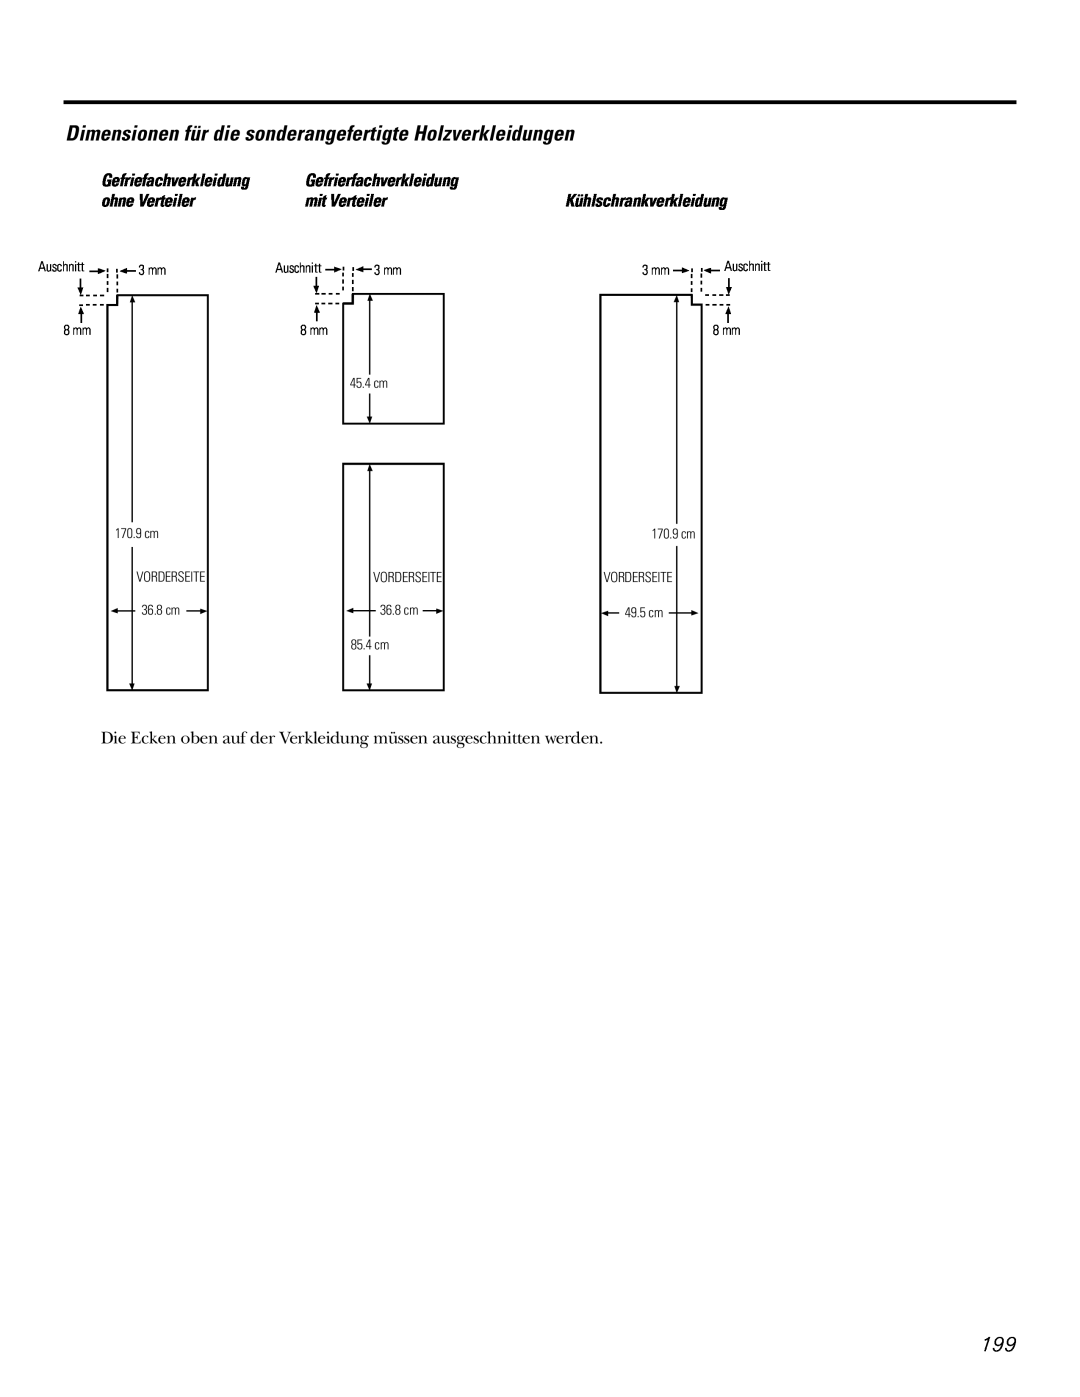 GE 21, 23, 25, 27, 29 Dimensionen für die sonderangefertigte Holzverkleidungen, 3 mm, 8 mm, Vorderseite, 85.4 cm, 170.9 cm 